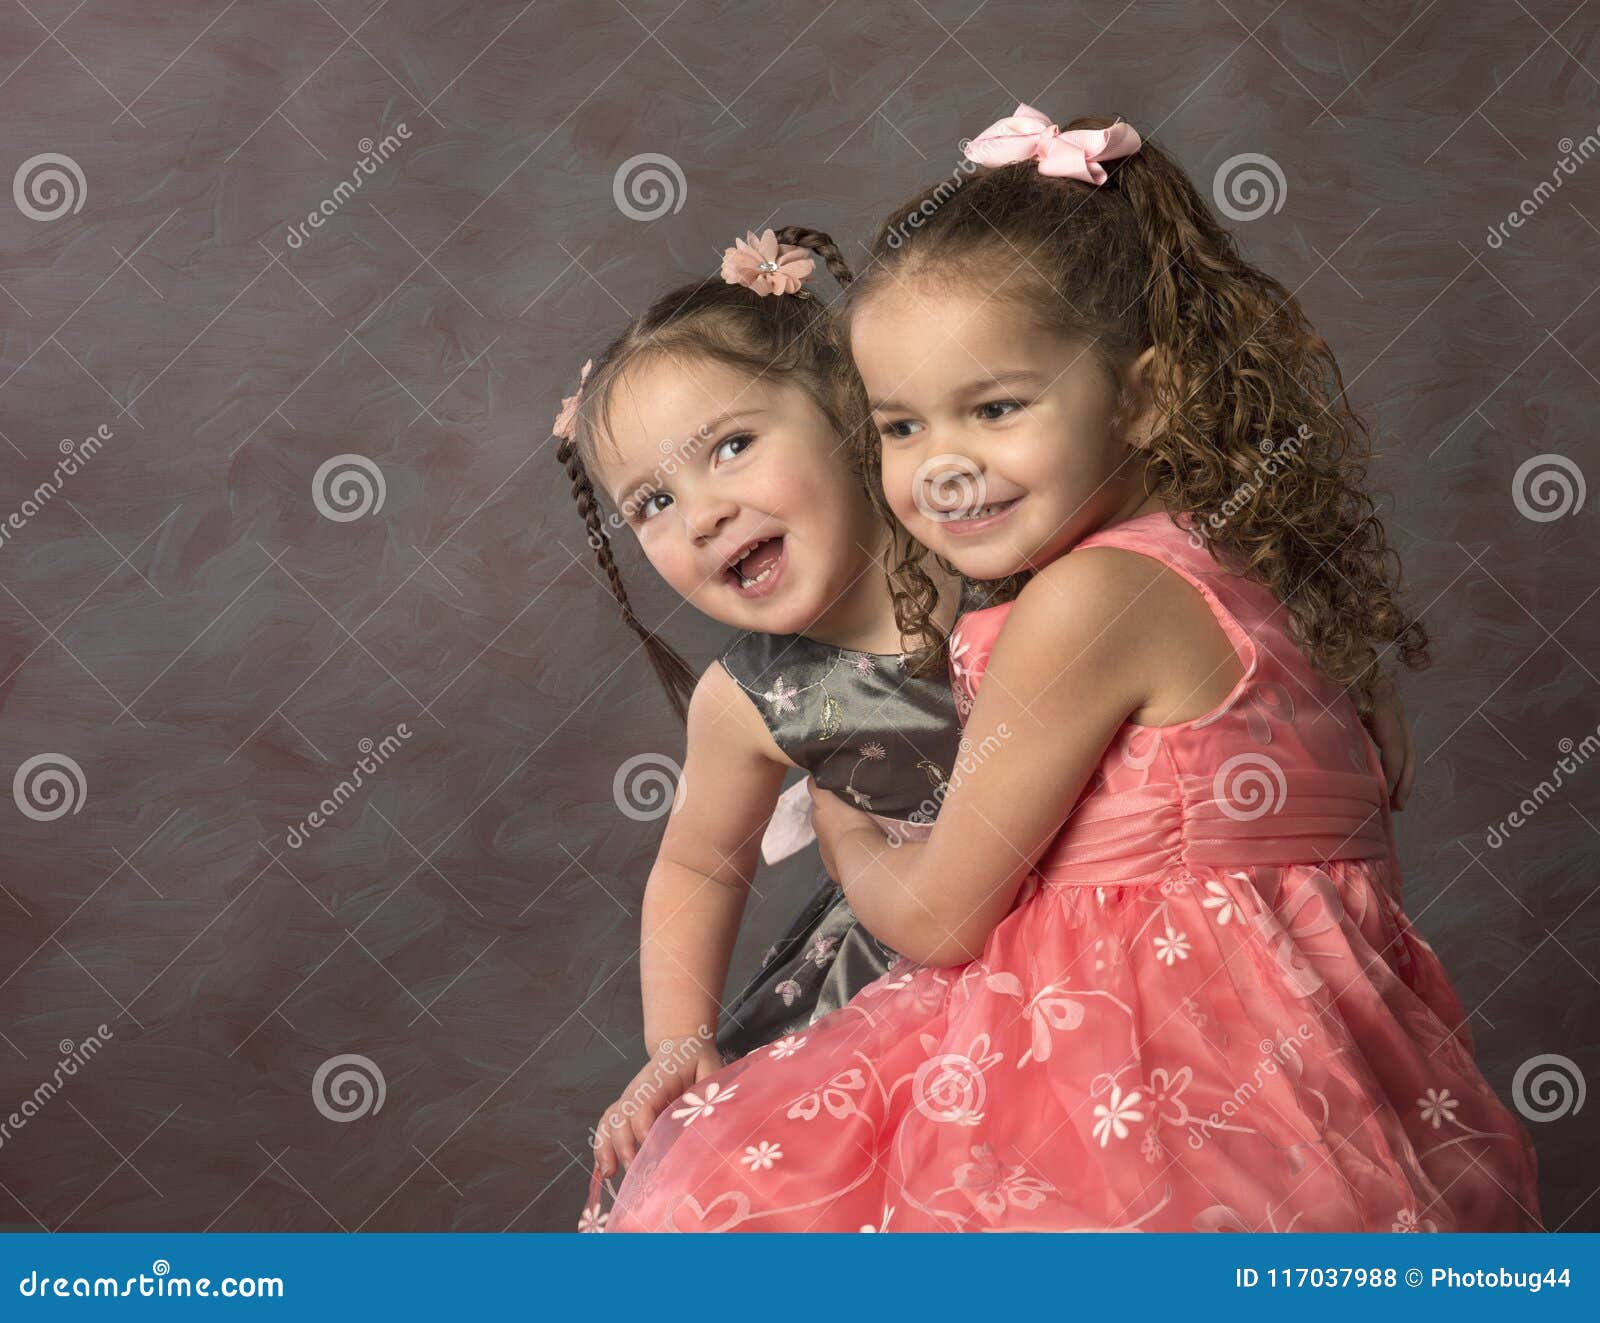 壁纸1024×768黑白儿童摄影 卷发小女孩图片壁纸壁纸,爱与纯真-可爱婴儿儿童摄影壁纸壁纸图片-摄影壁纸-摄影图片素材-桌面壁纸